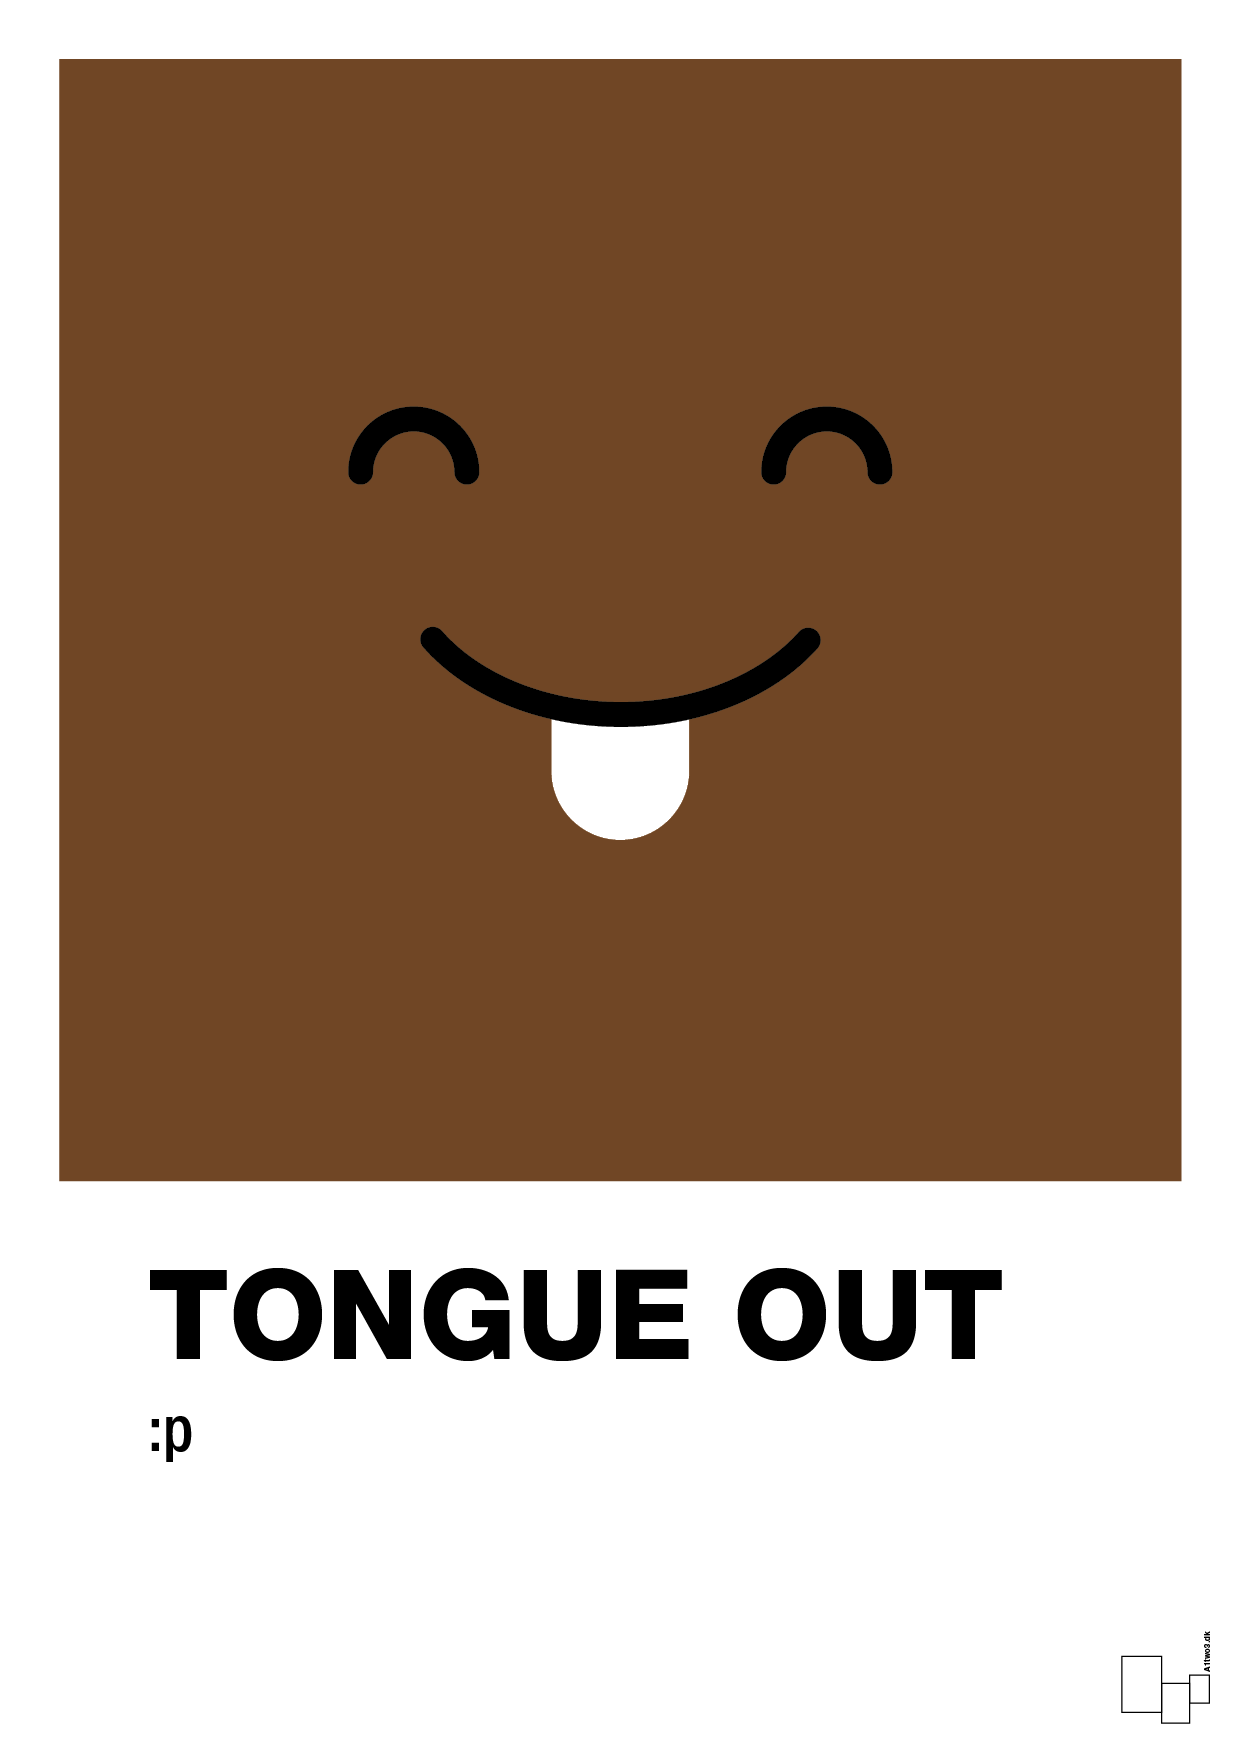 tongue out smiley - Plakat med Grafik i Dark Brown